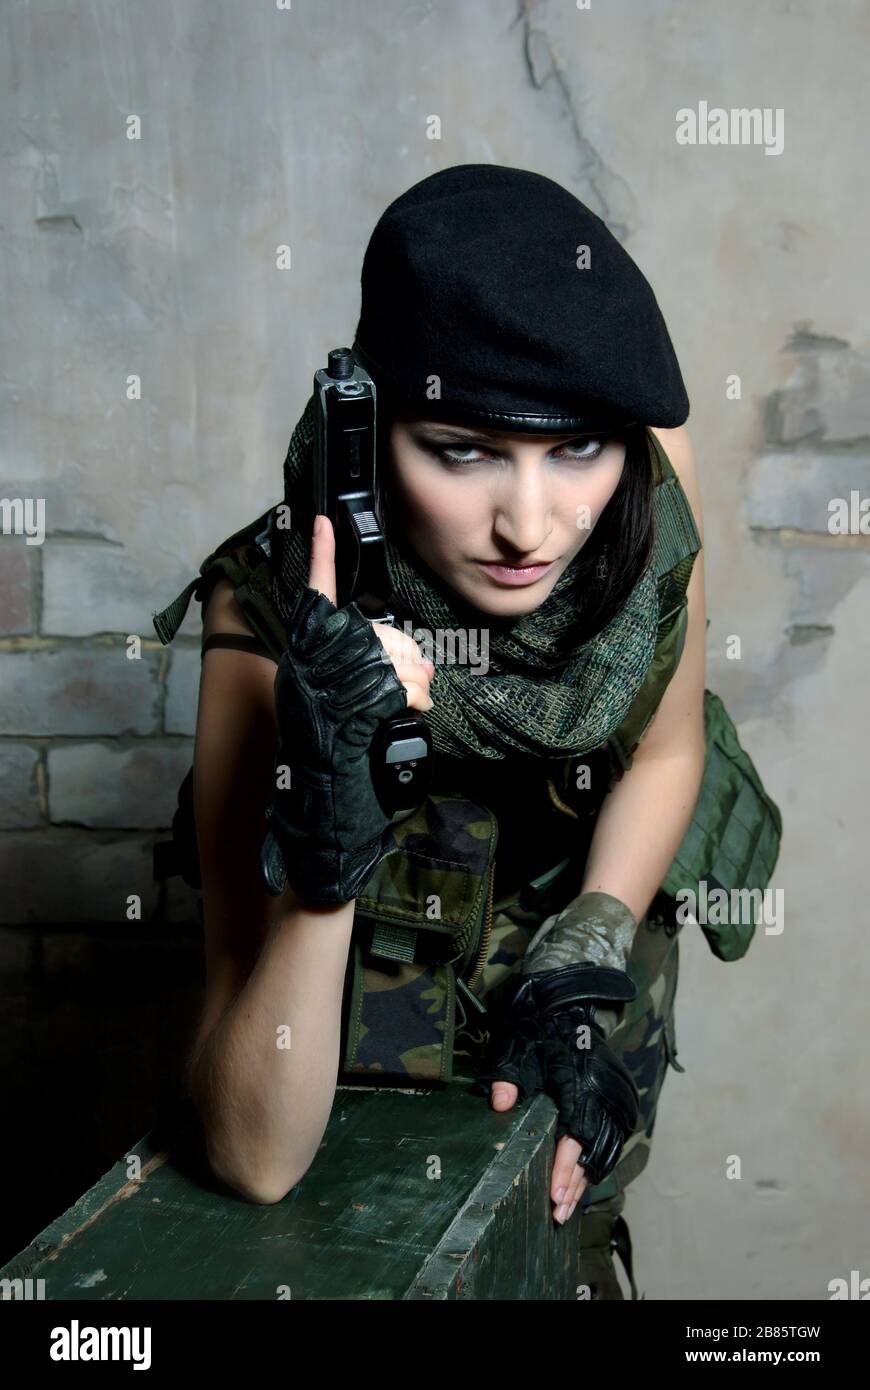 femme militaire avec arme Photo Stock - Alamy